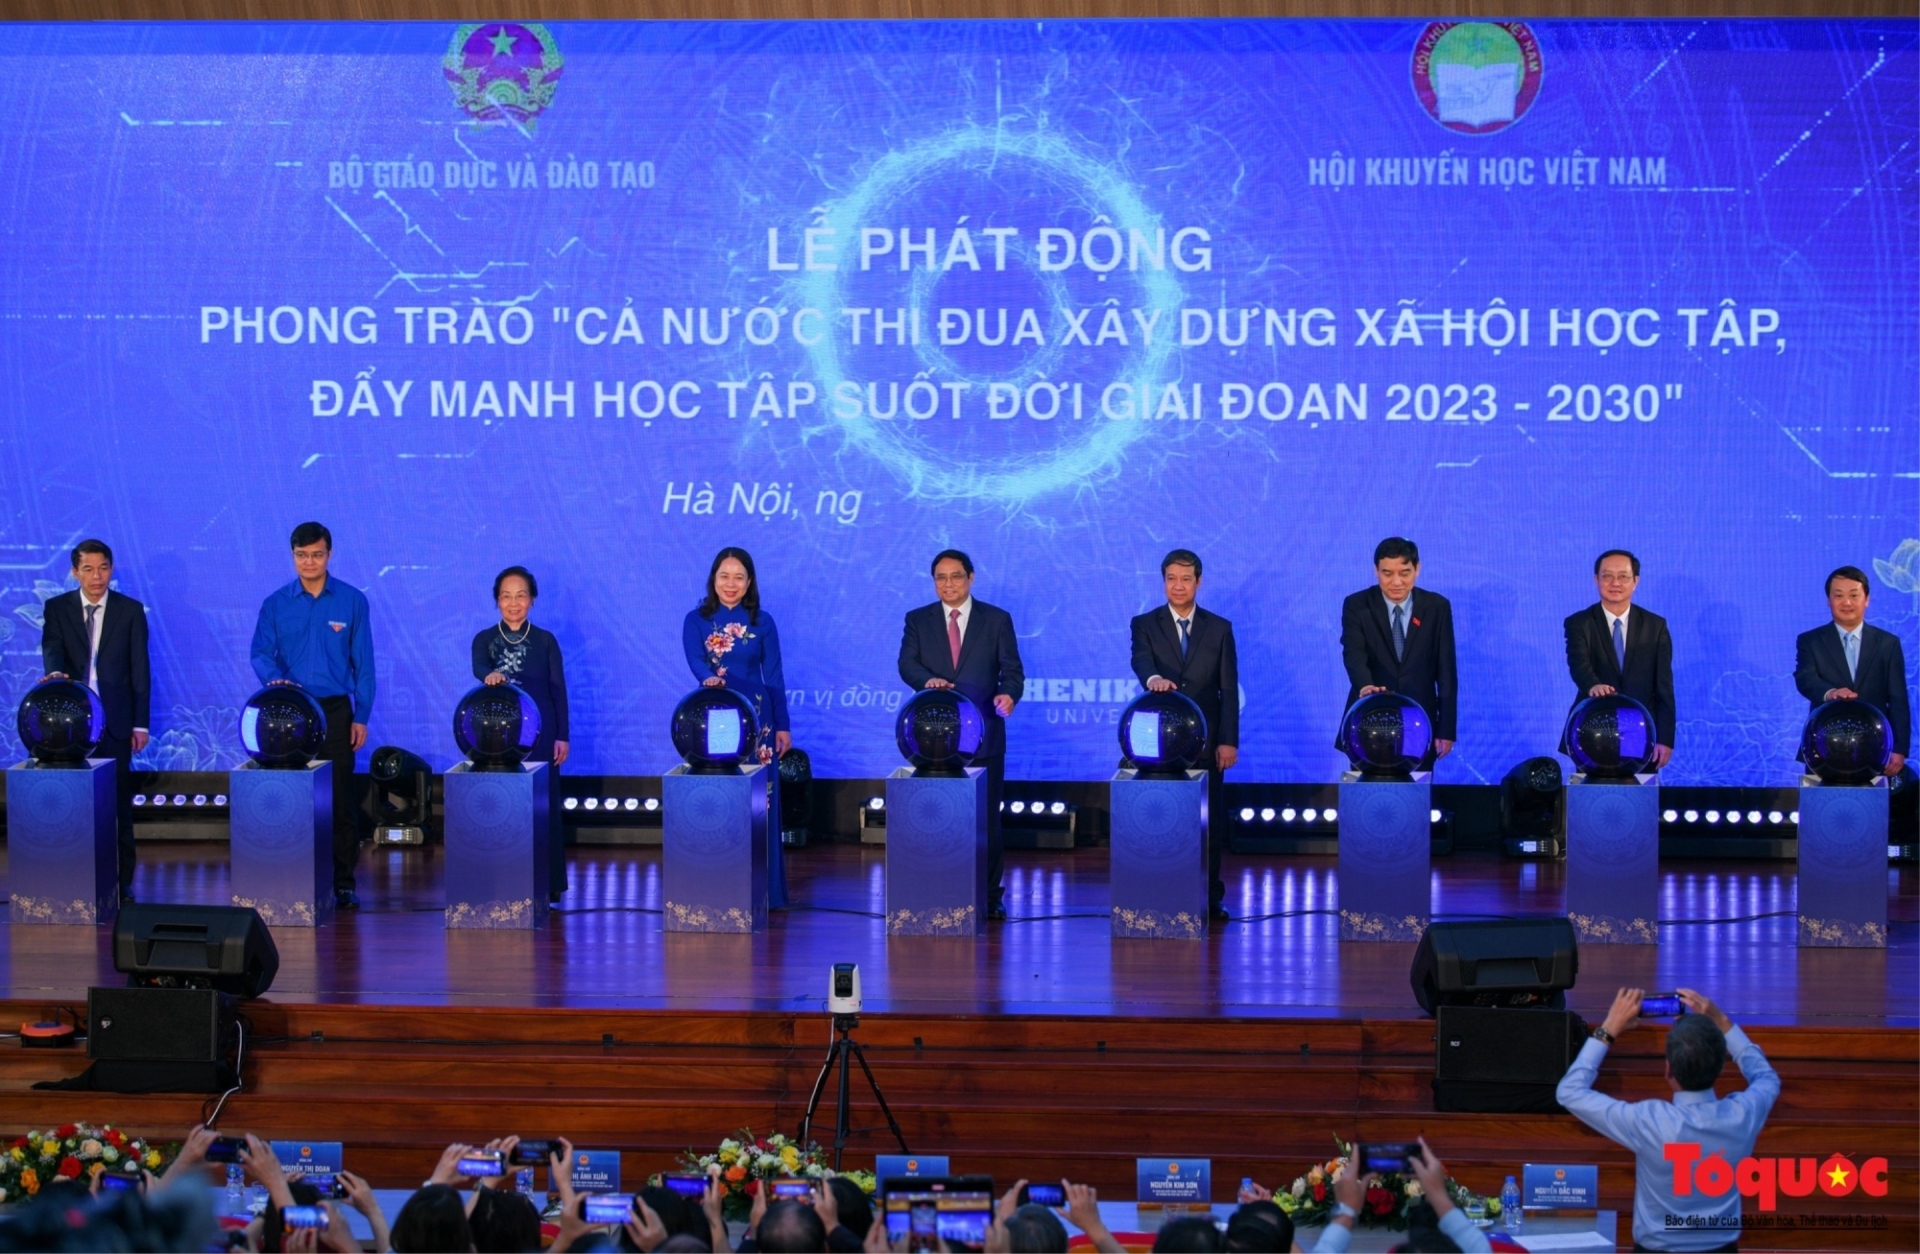 Thủ tướng Phạm Minh Chính và các đại biểu thực hiện nghi thức phát động Phong trào Cả nước thi đua xây dựng xã hội học tập, đẩy mạnh học tập suốt đời giai đoạn 2023-2030